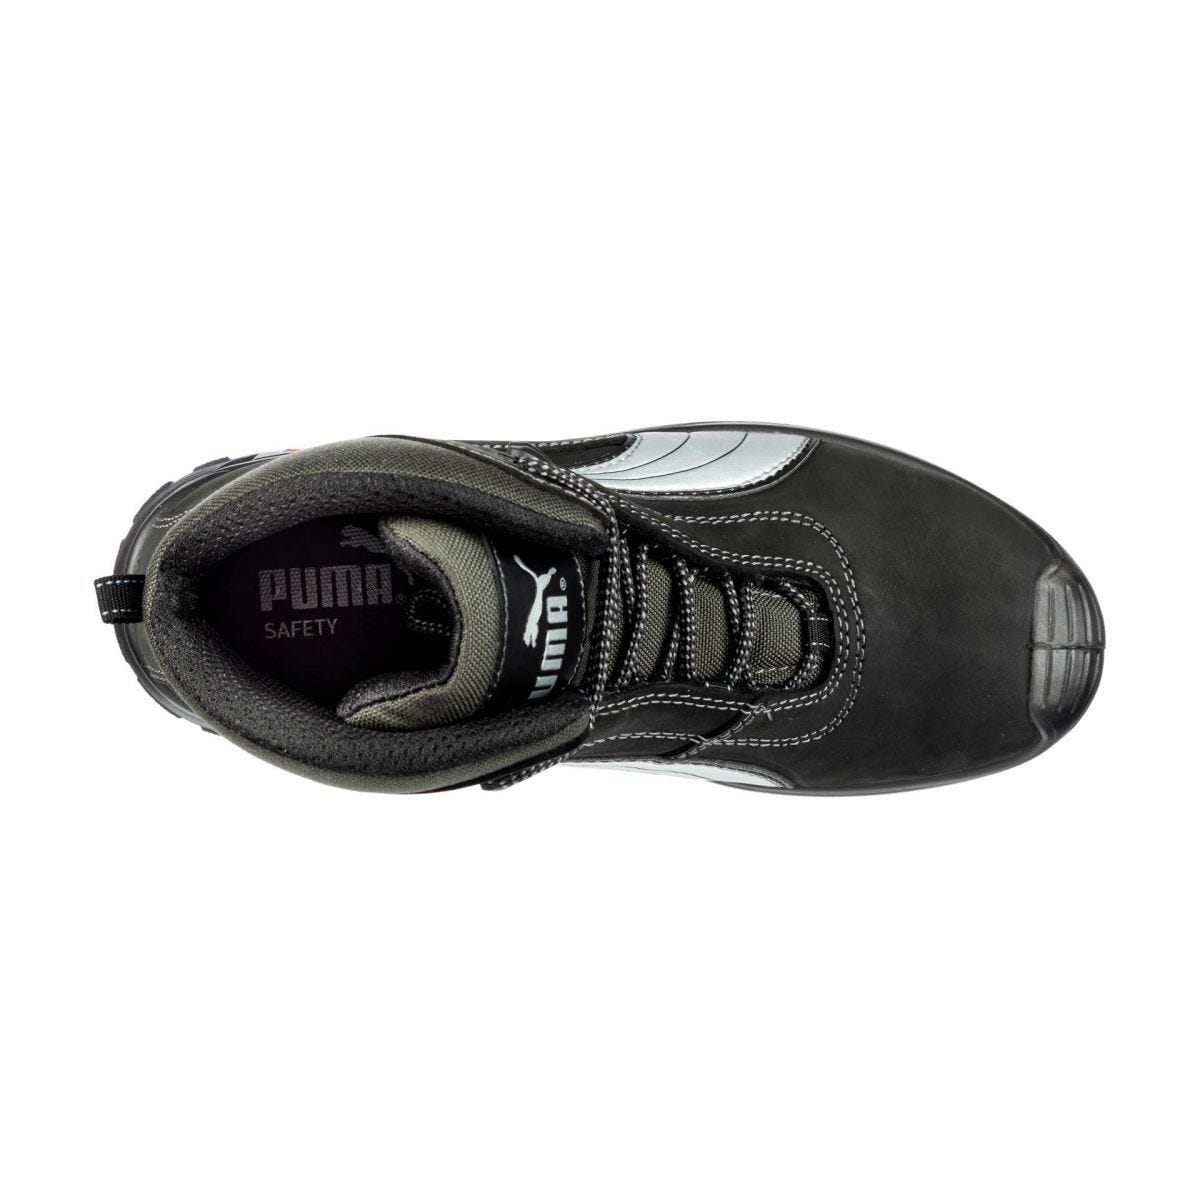 Chaussures de sécurité Cascades mid S3 HRO SRC - Puma - Taille 40 2